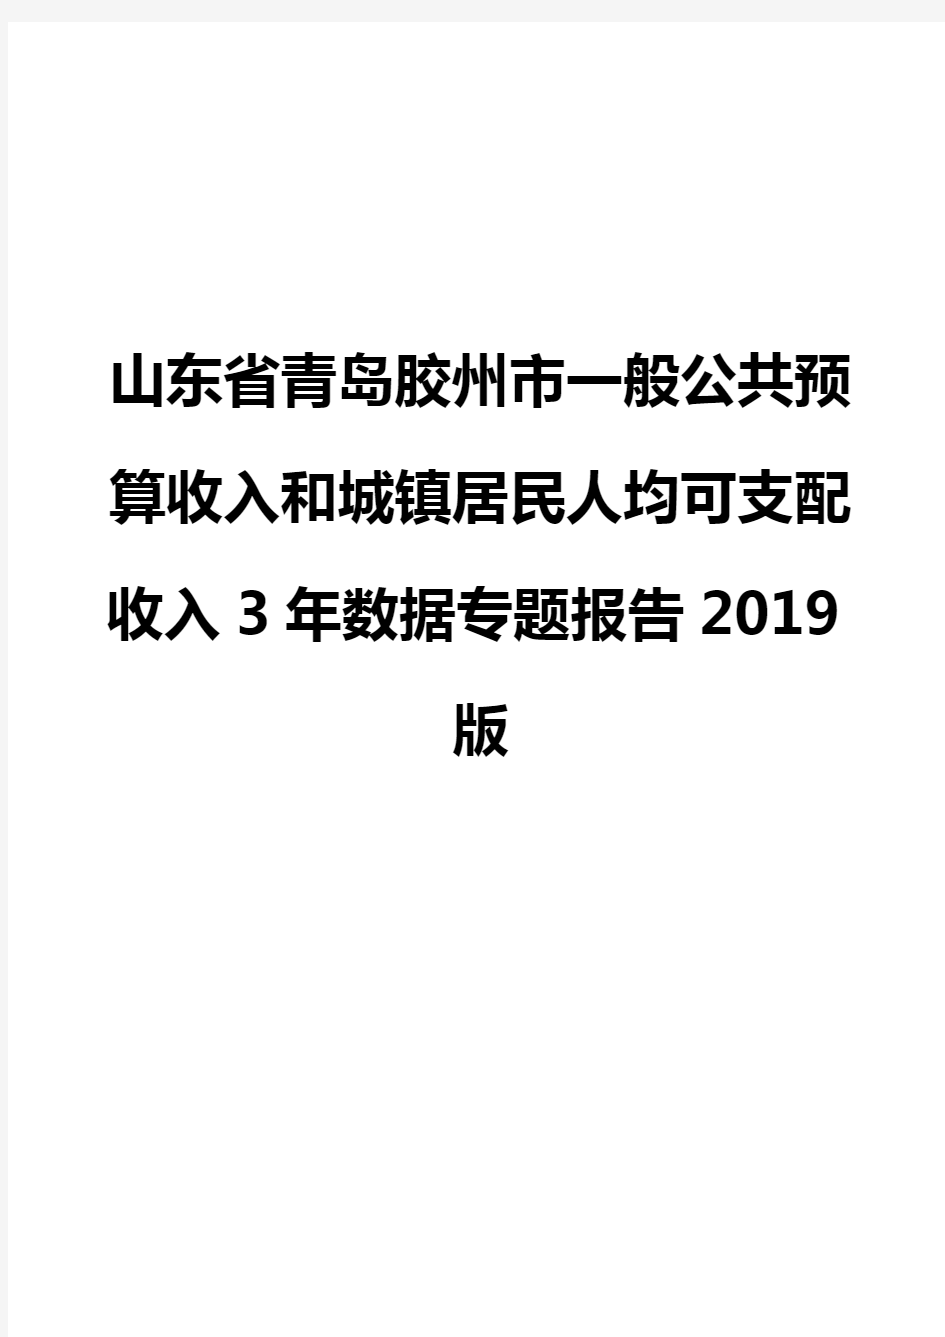 山东省青岛胶州市一般公共预算收入和城镇居民人均可支配收入3年数据专题报告2019版